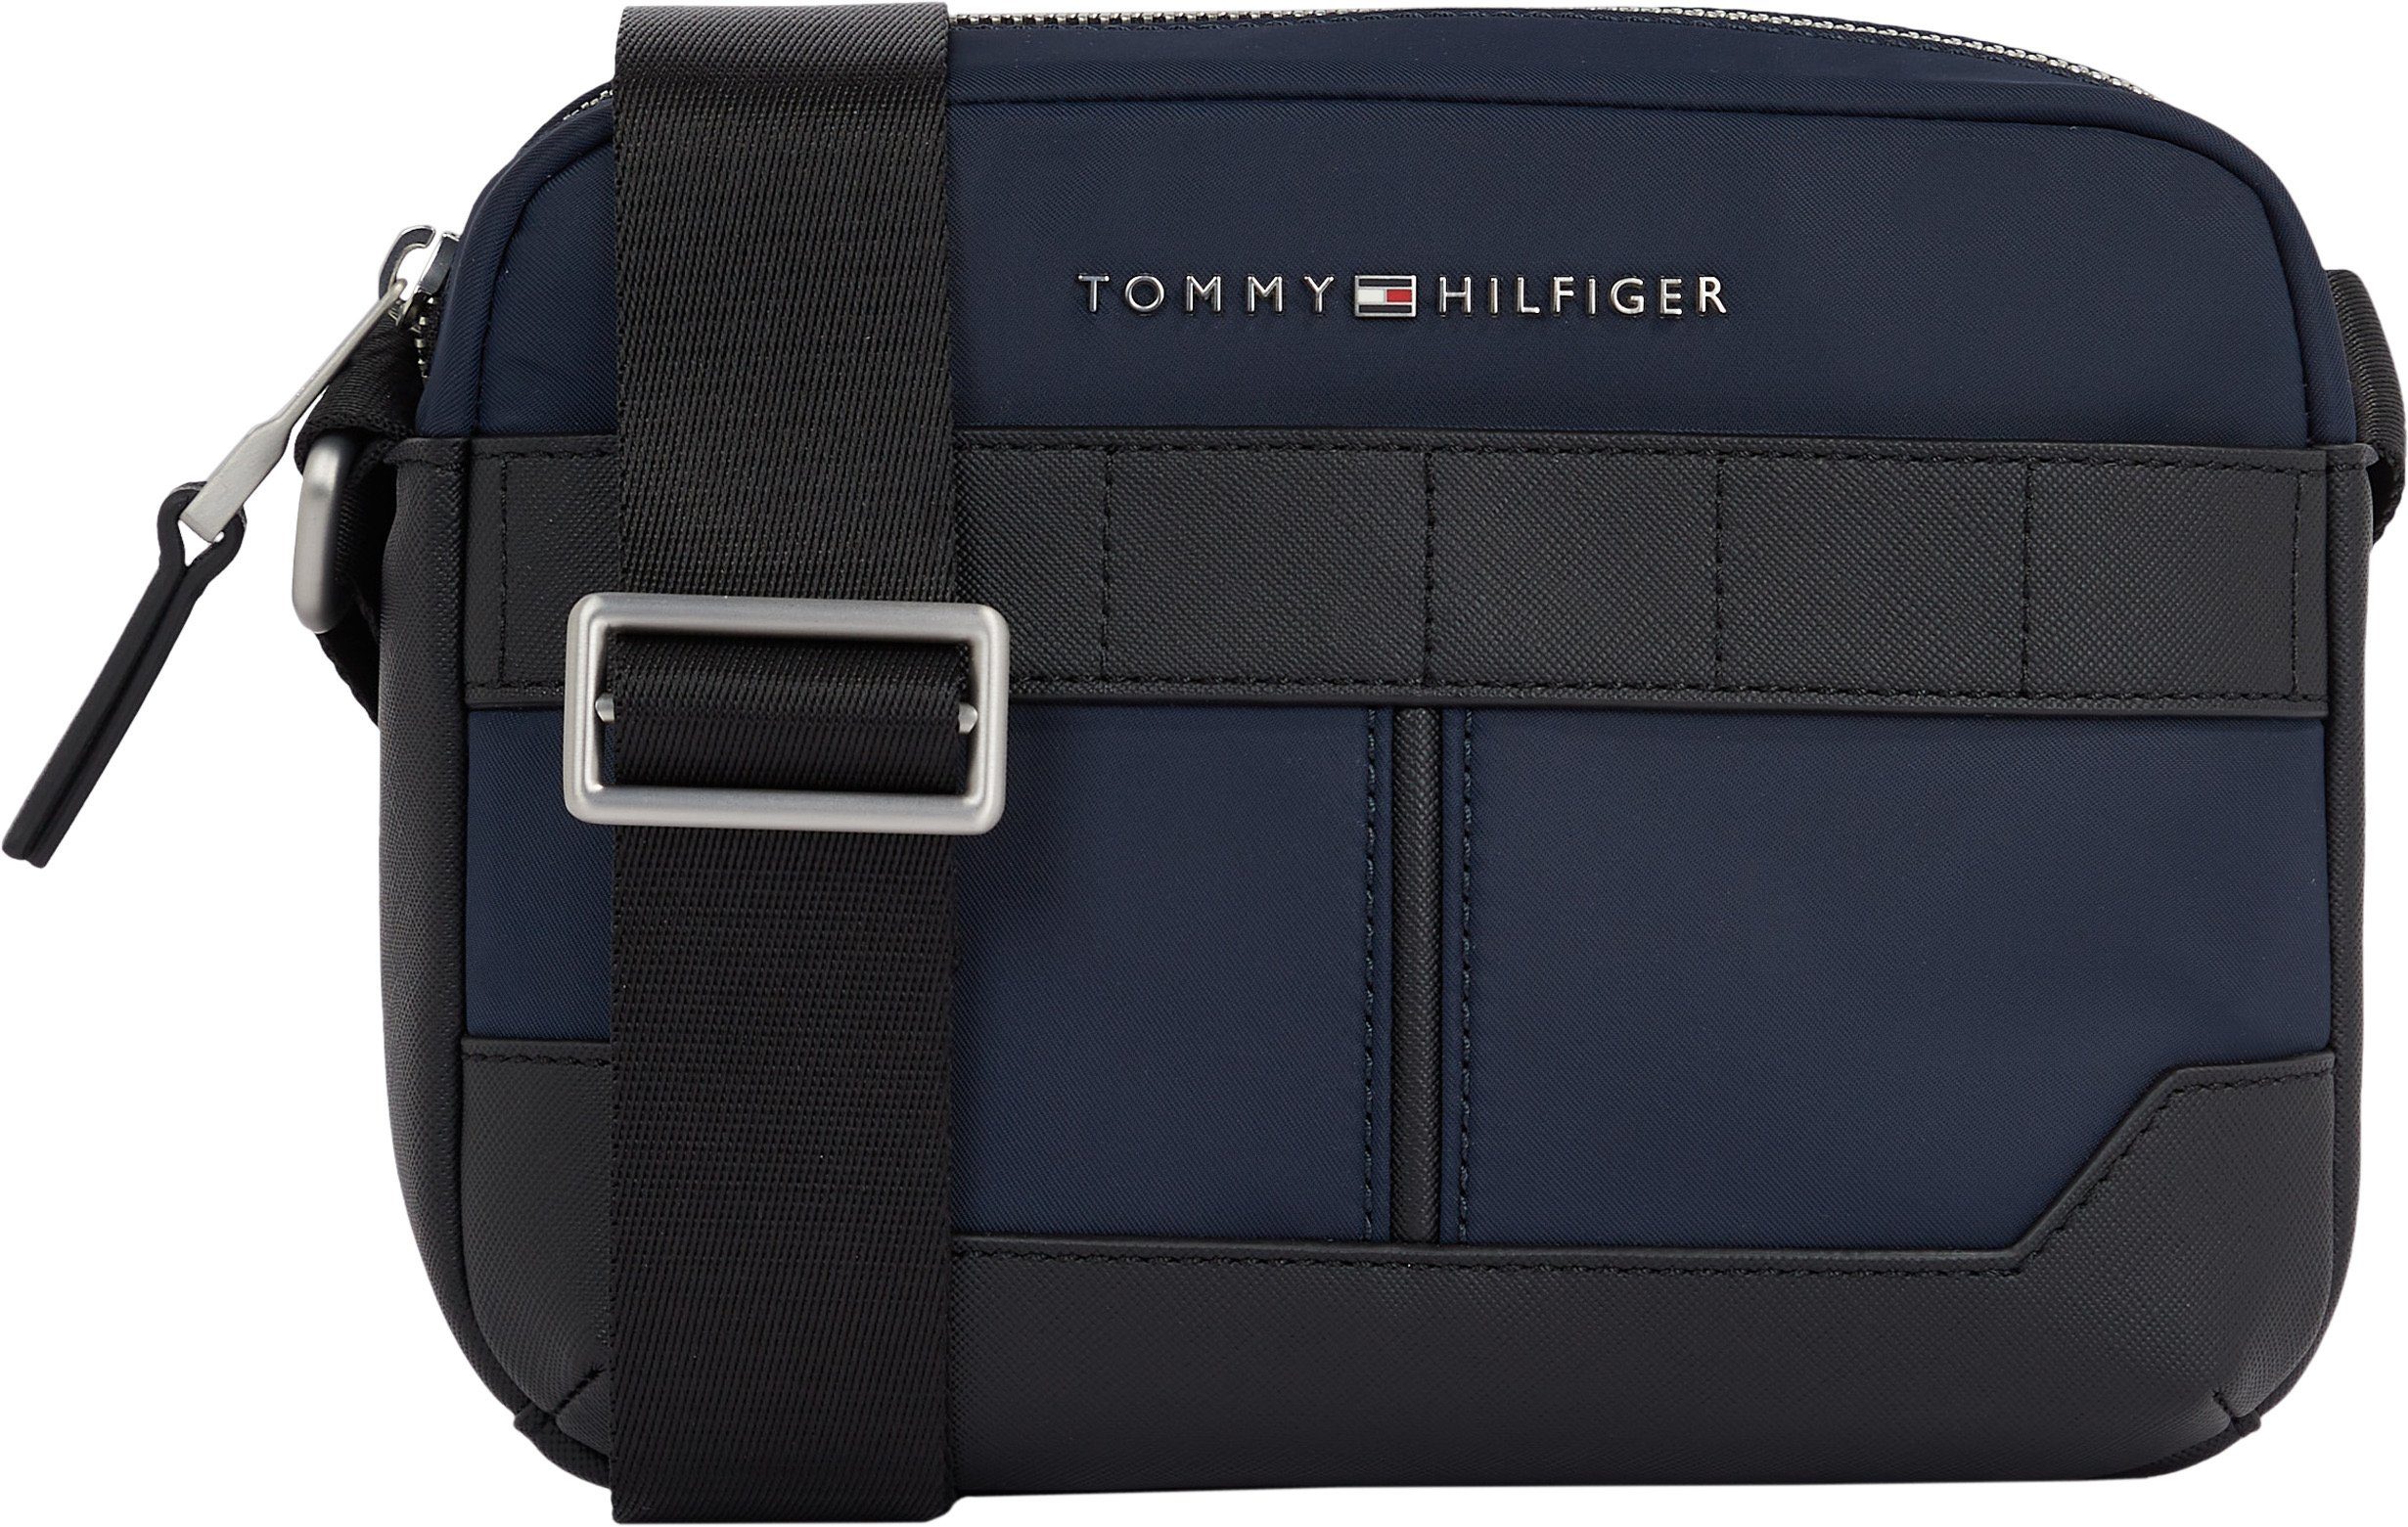 [Sie können echte Produkte zu günstigen Preisen kaufen!] Mini Bag ELEVATED Umhängetasche Tommy NYLON Hilfiger BAG, TH kleine CAMERA